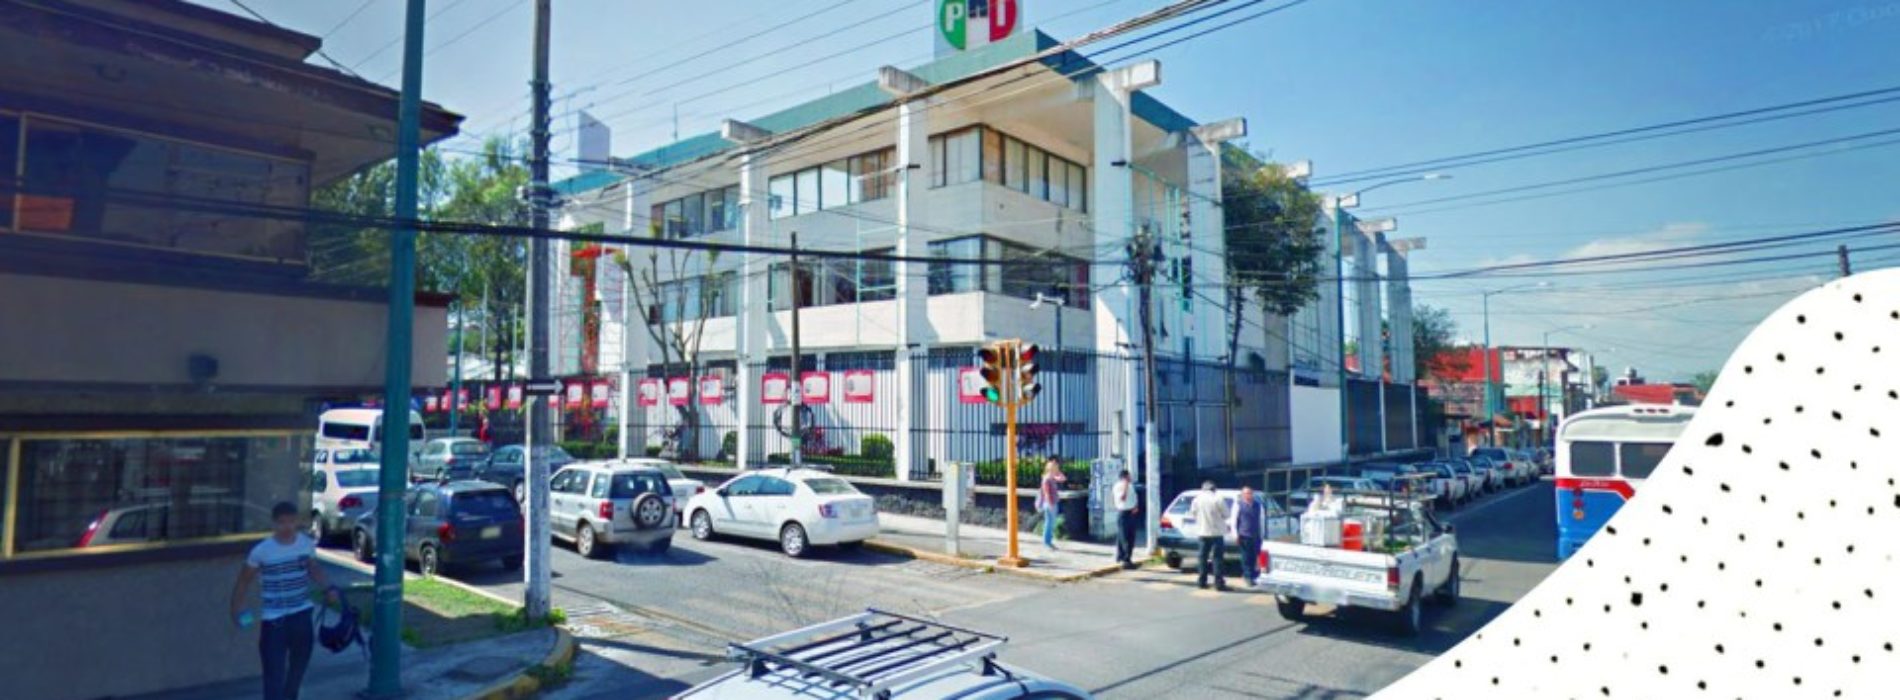 Verificado.mx: Queman sede del PRI en Veracruz… en
2014